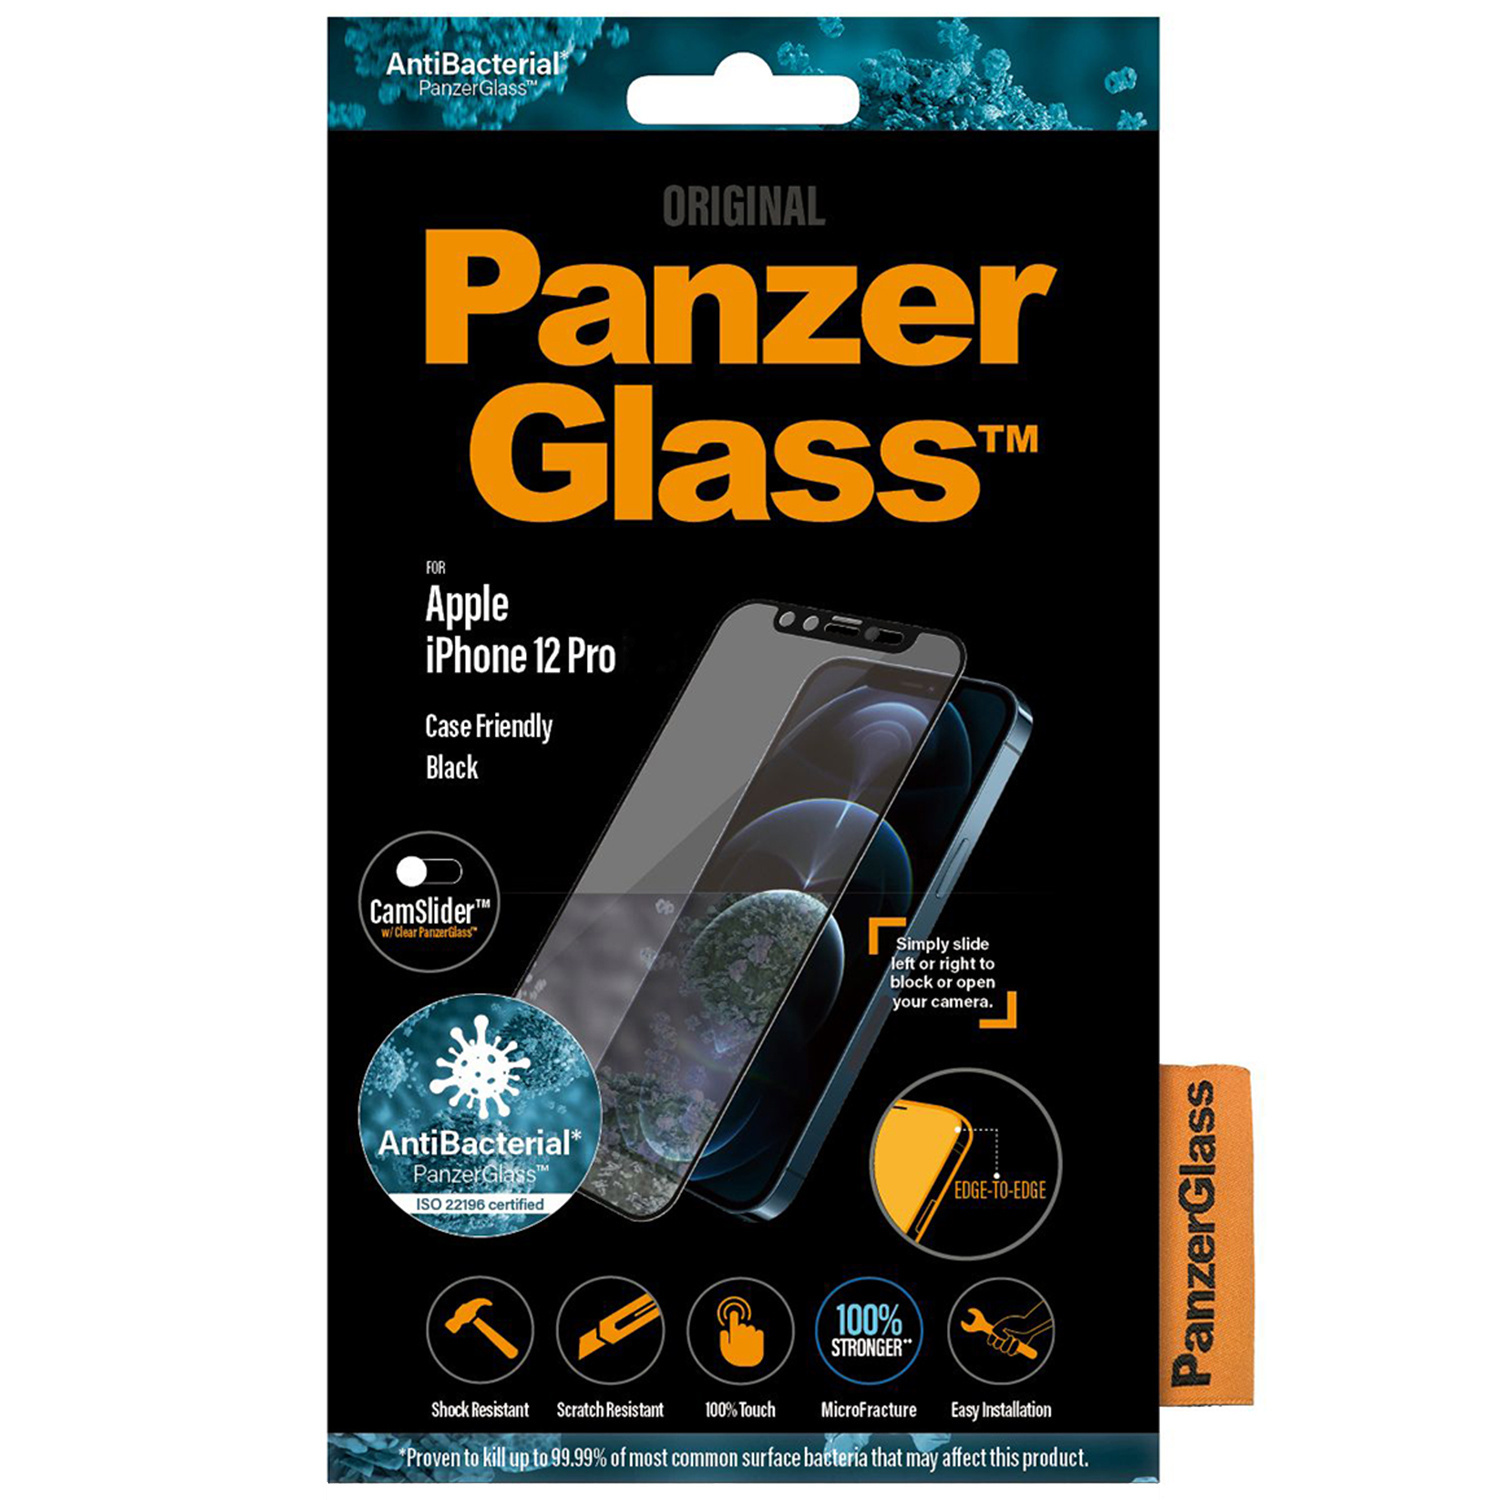 Panzerglass CamSliderâ„¢ Screenprotector voor iPhone 12, iPhone 12 Pro - Zwart